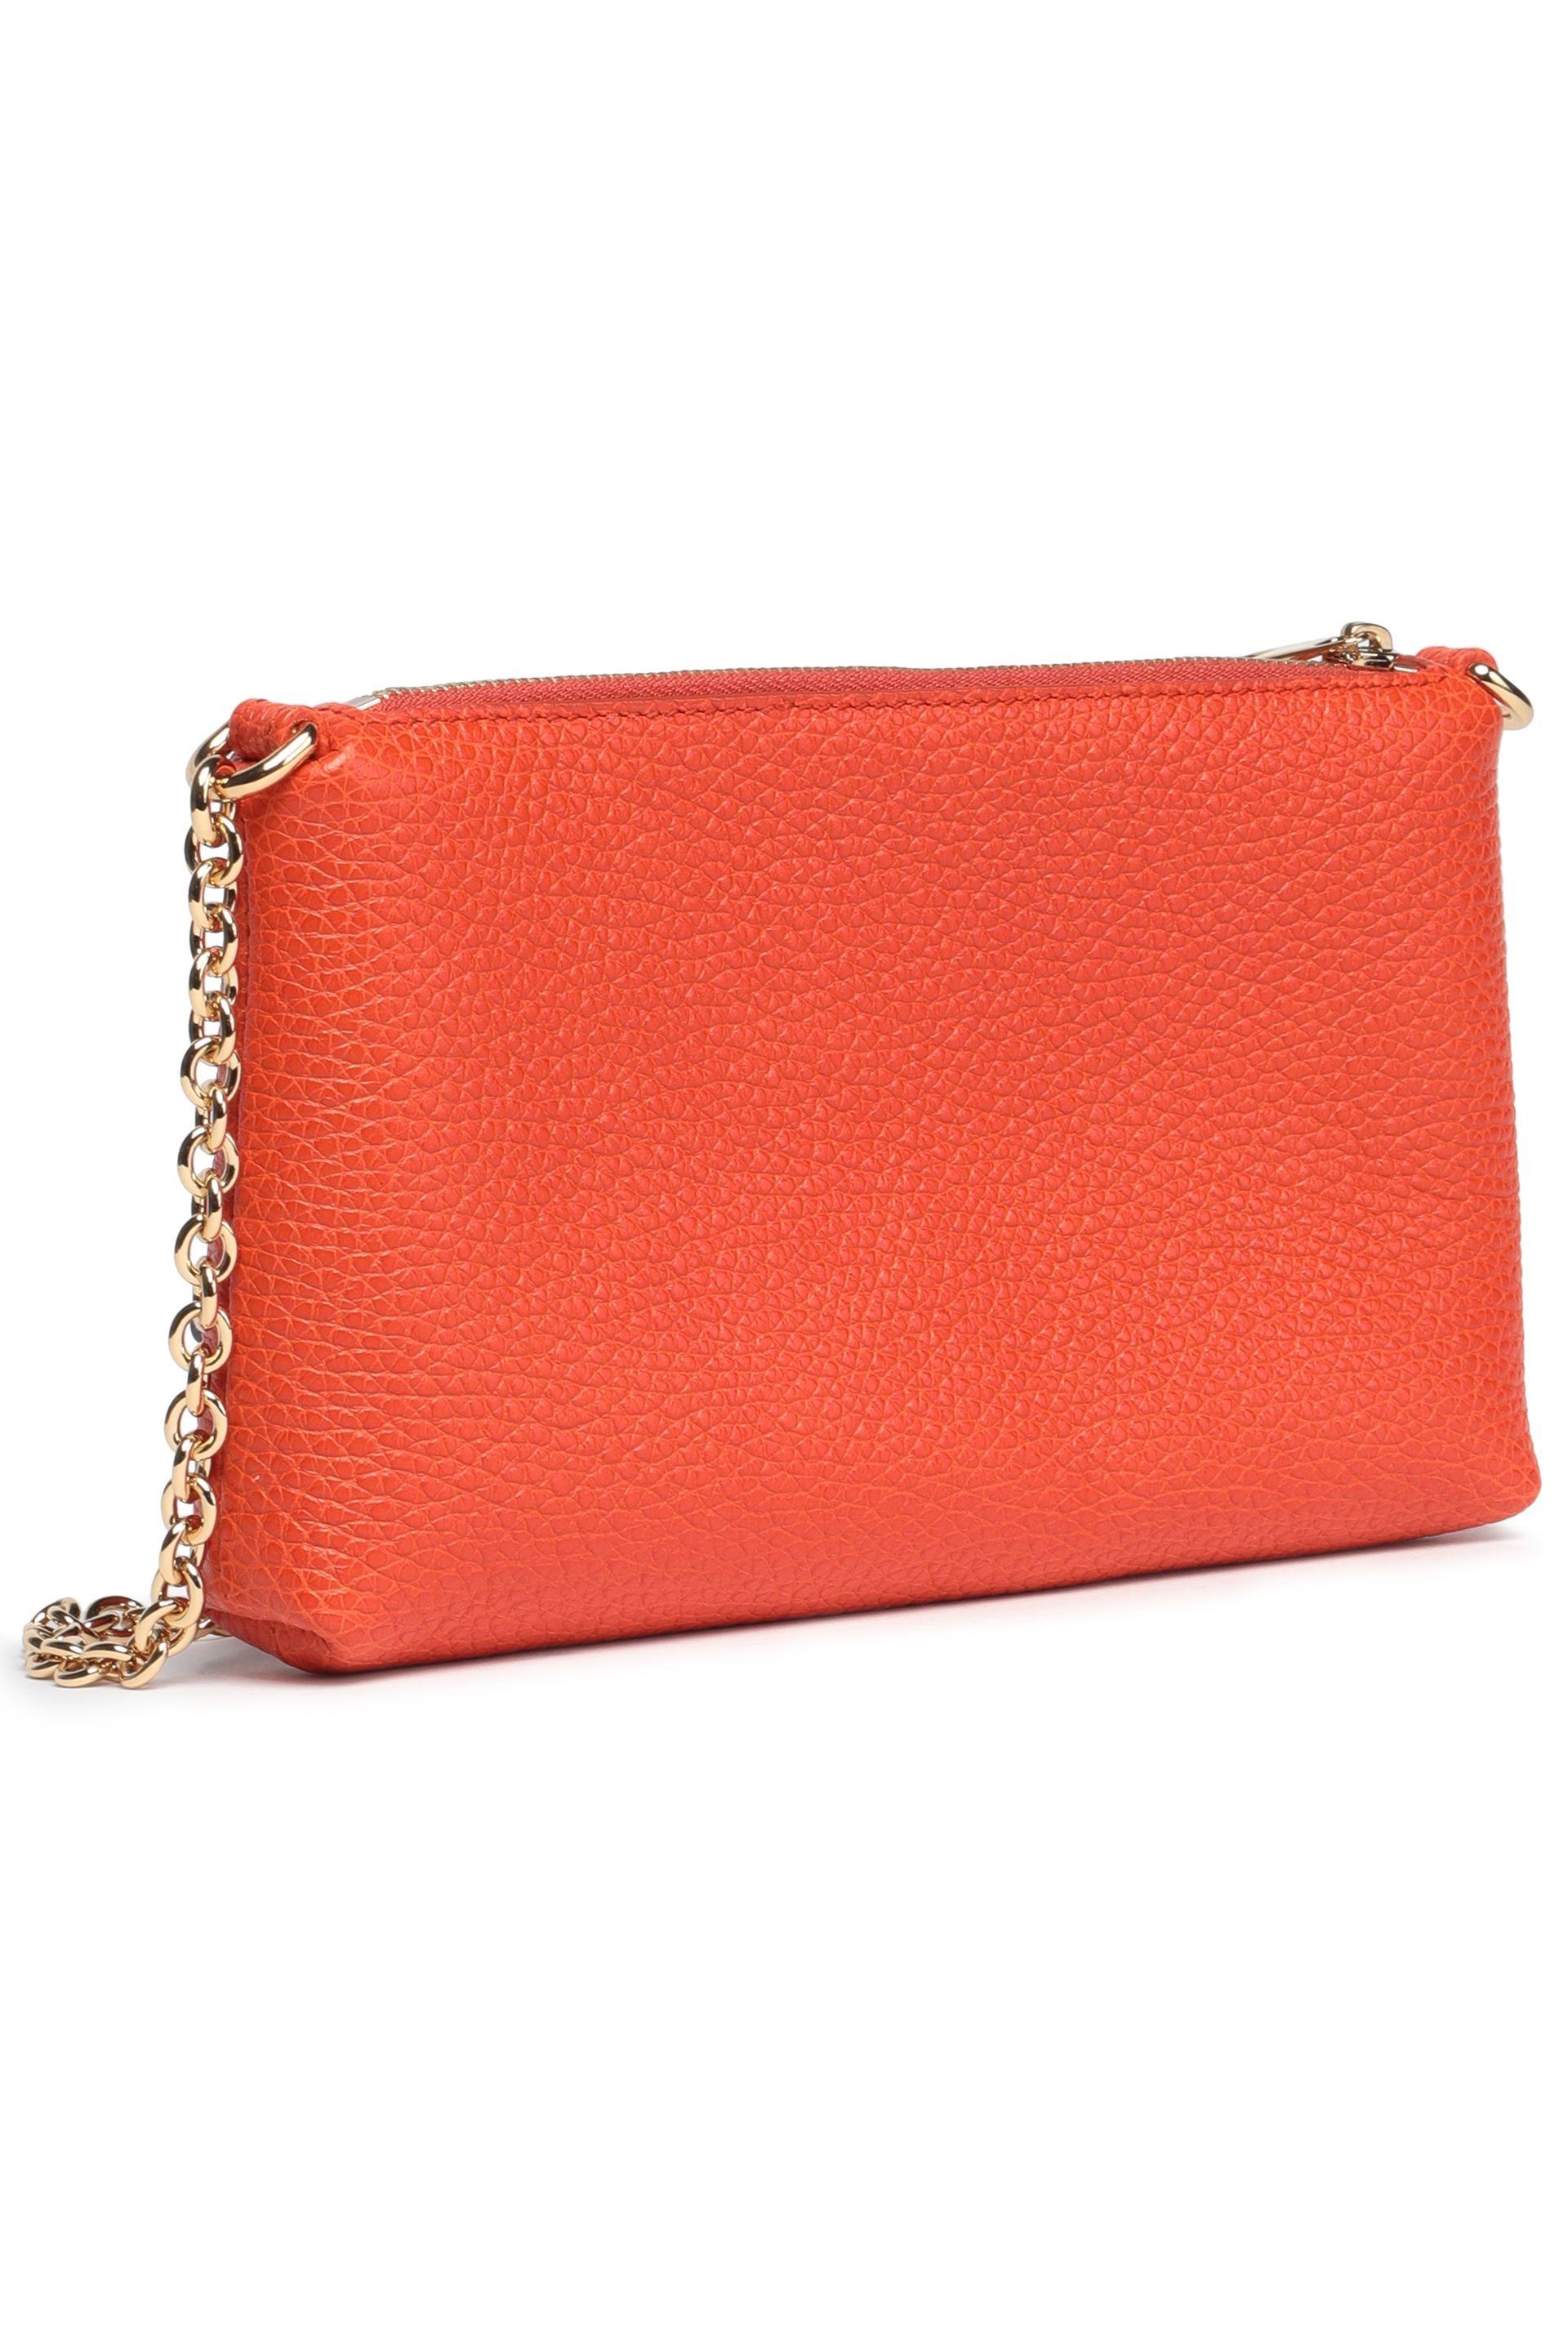 Dolce & Gabbana Pebbled-leather Shoulder Bag Bright Orange - Lyst